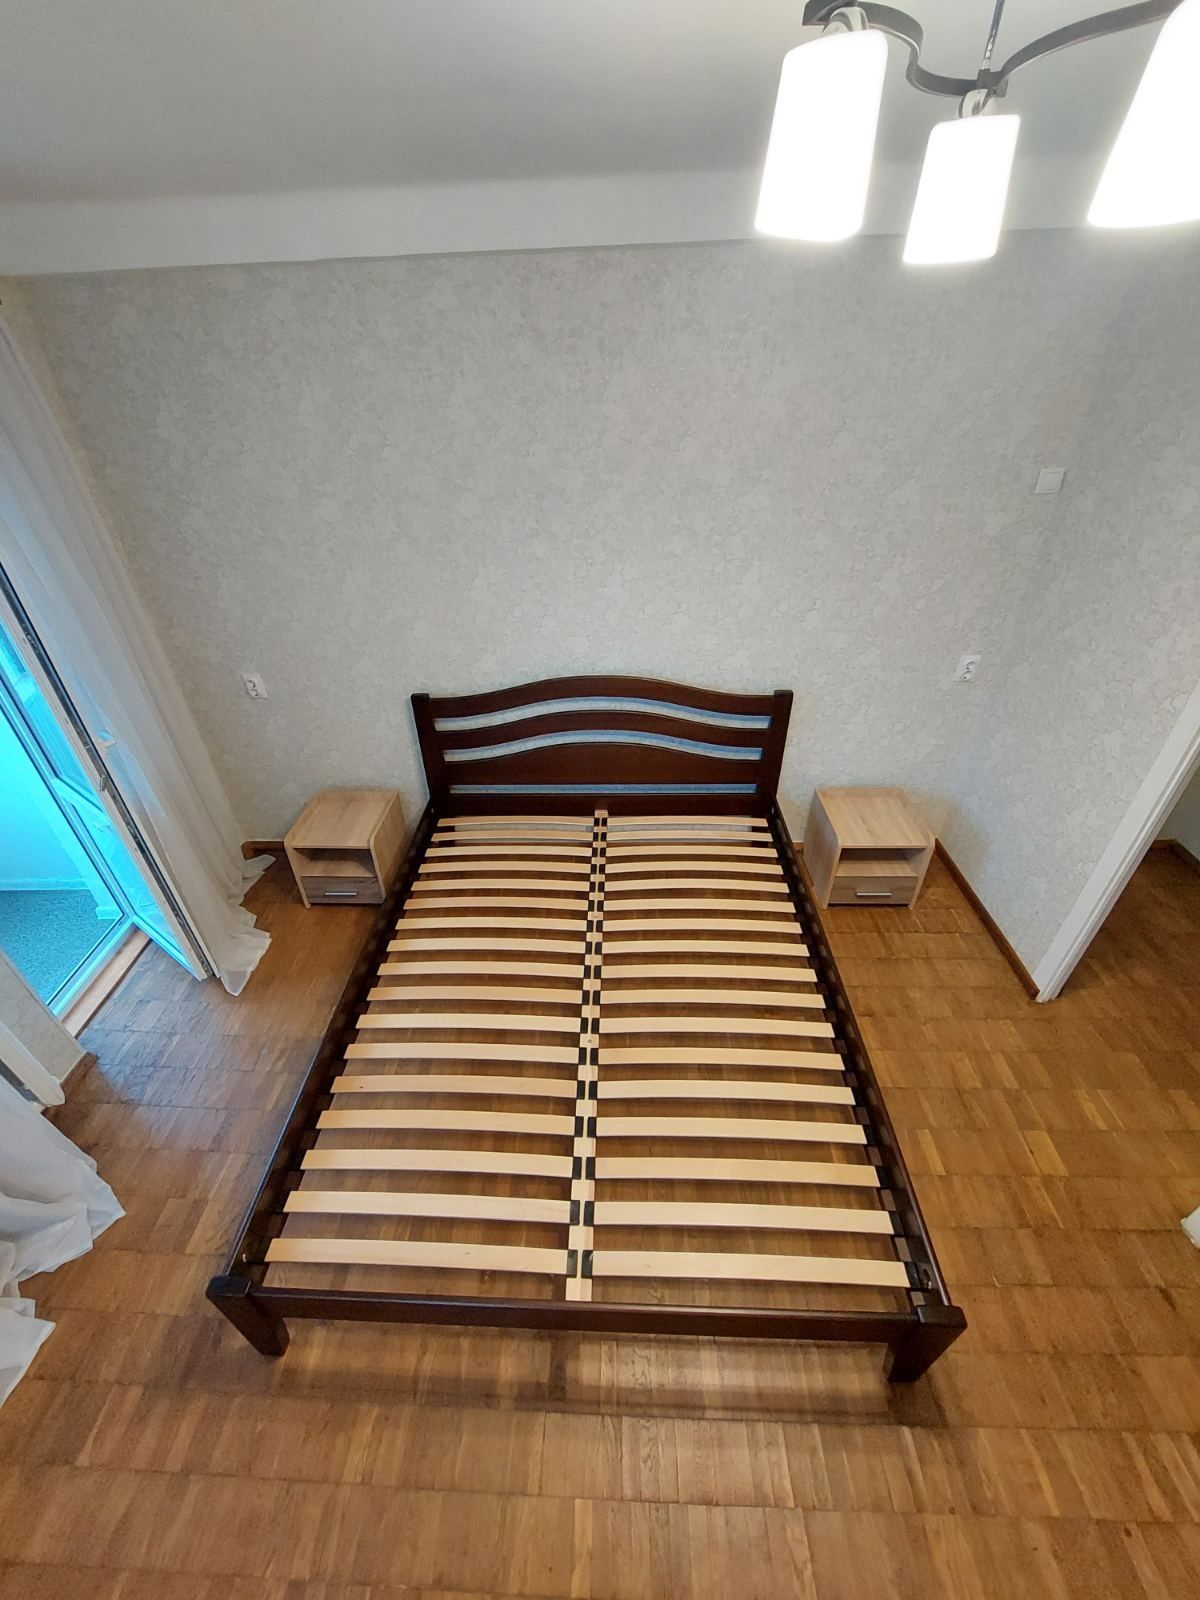 Продам кровать двухспальную 160×200 Бук , масив